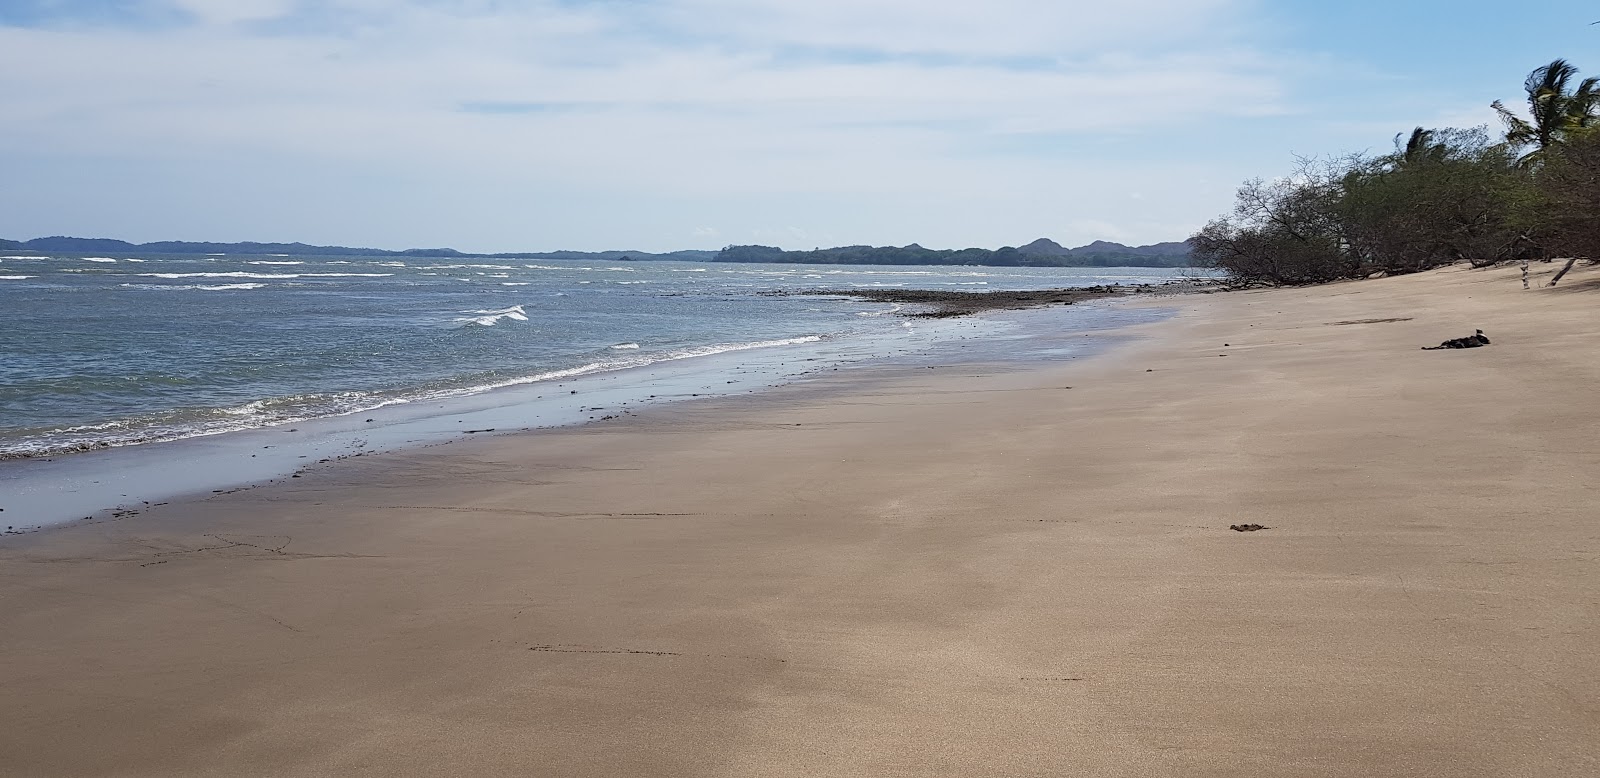 Playa Nanzal'in fotoğrafı siyah kum ve çakıl yüzey ile